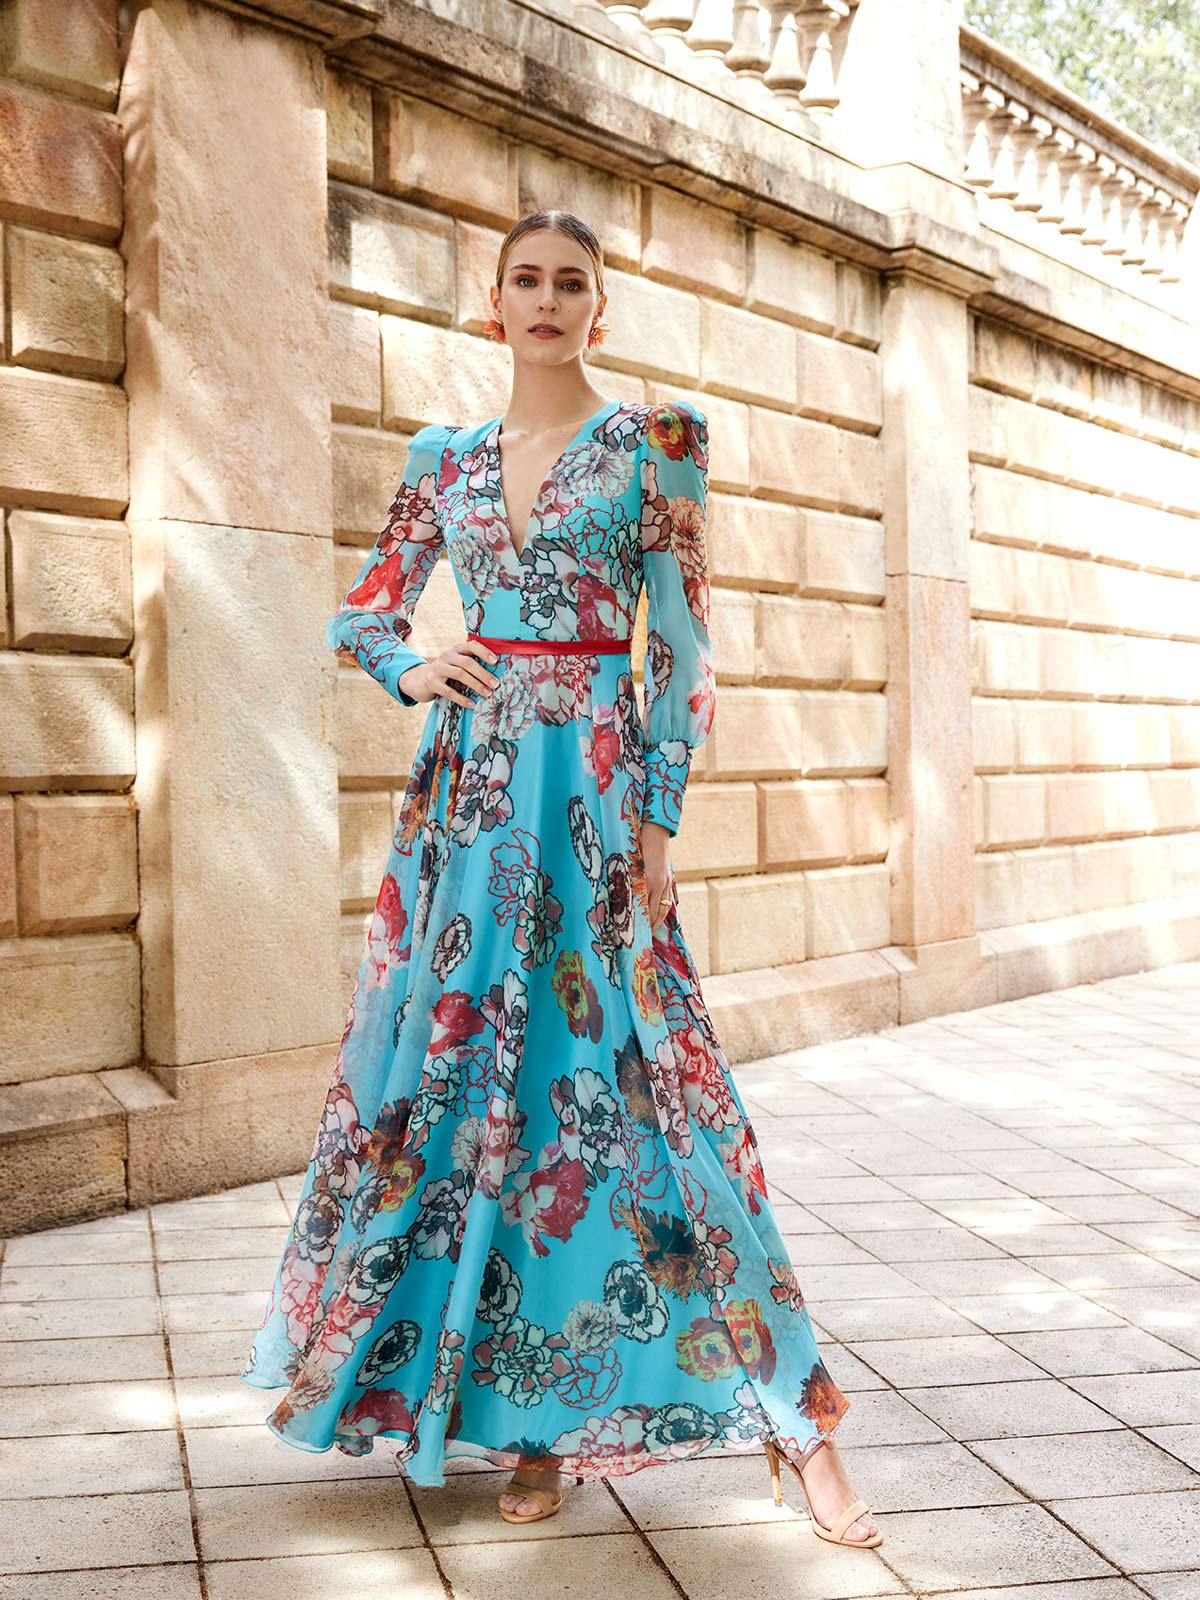 Modella con vestito da cerimonia azzurro